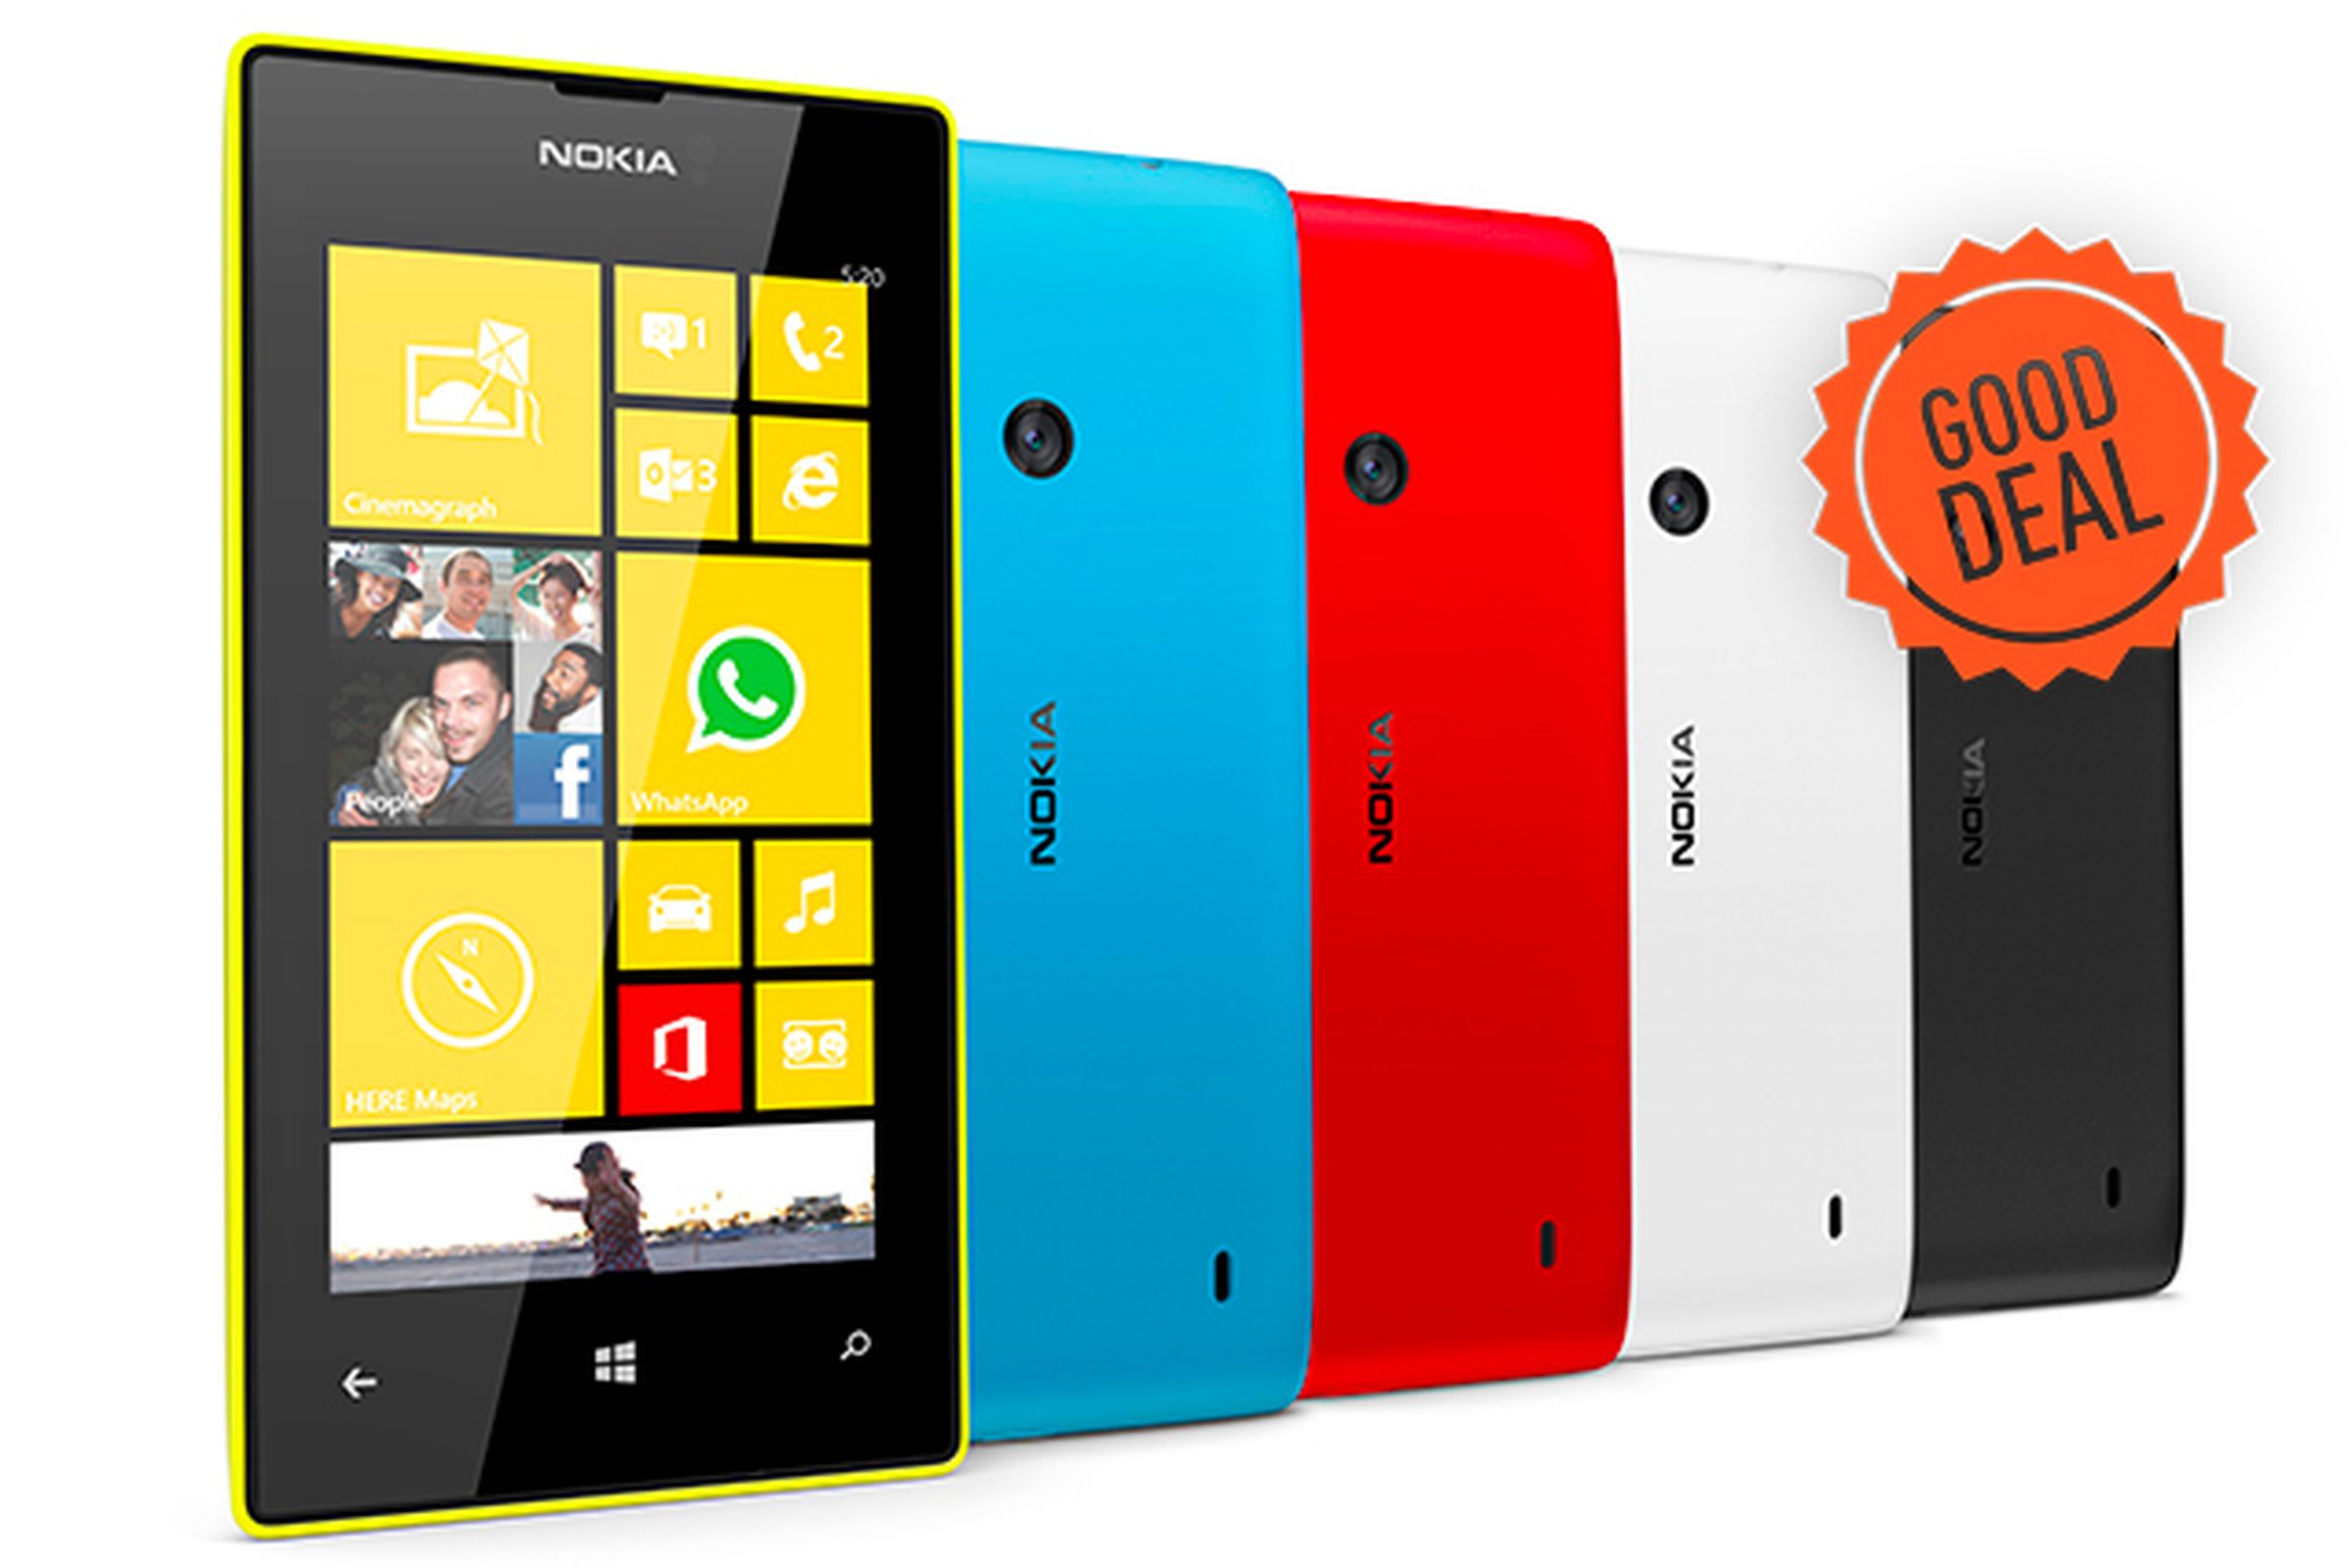 Lumia 520 good deal